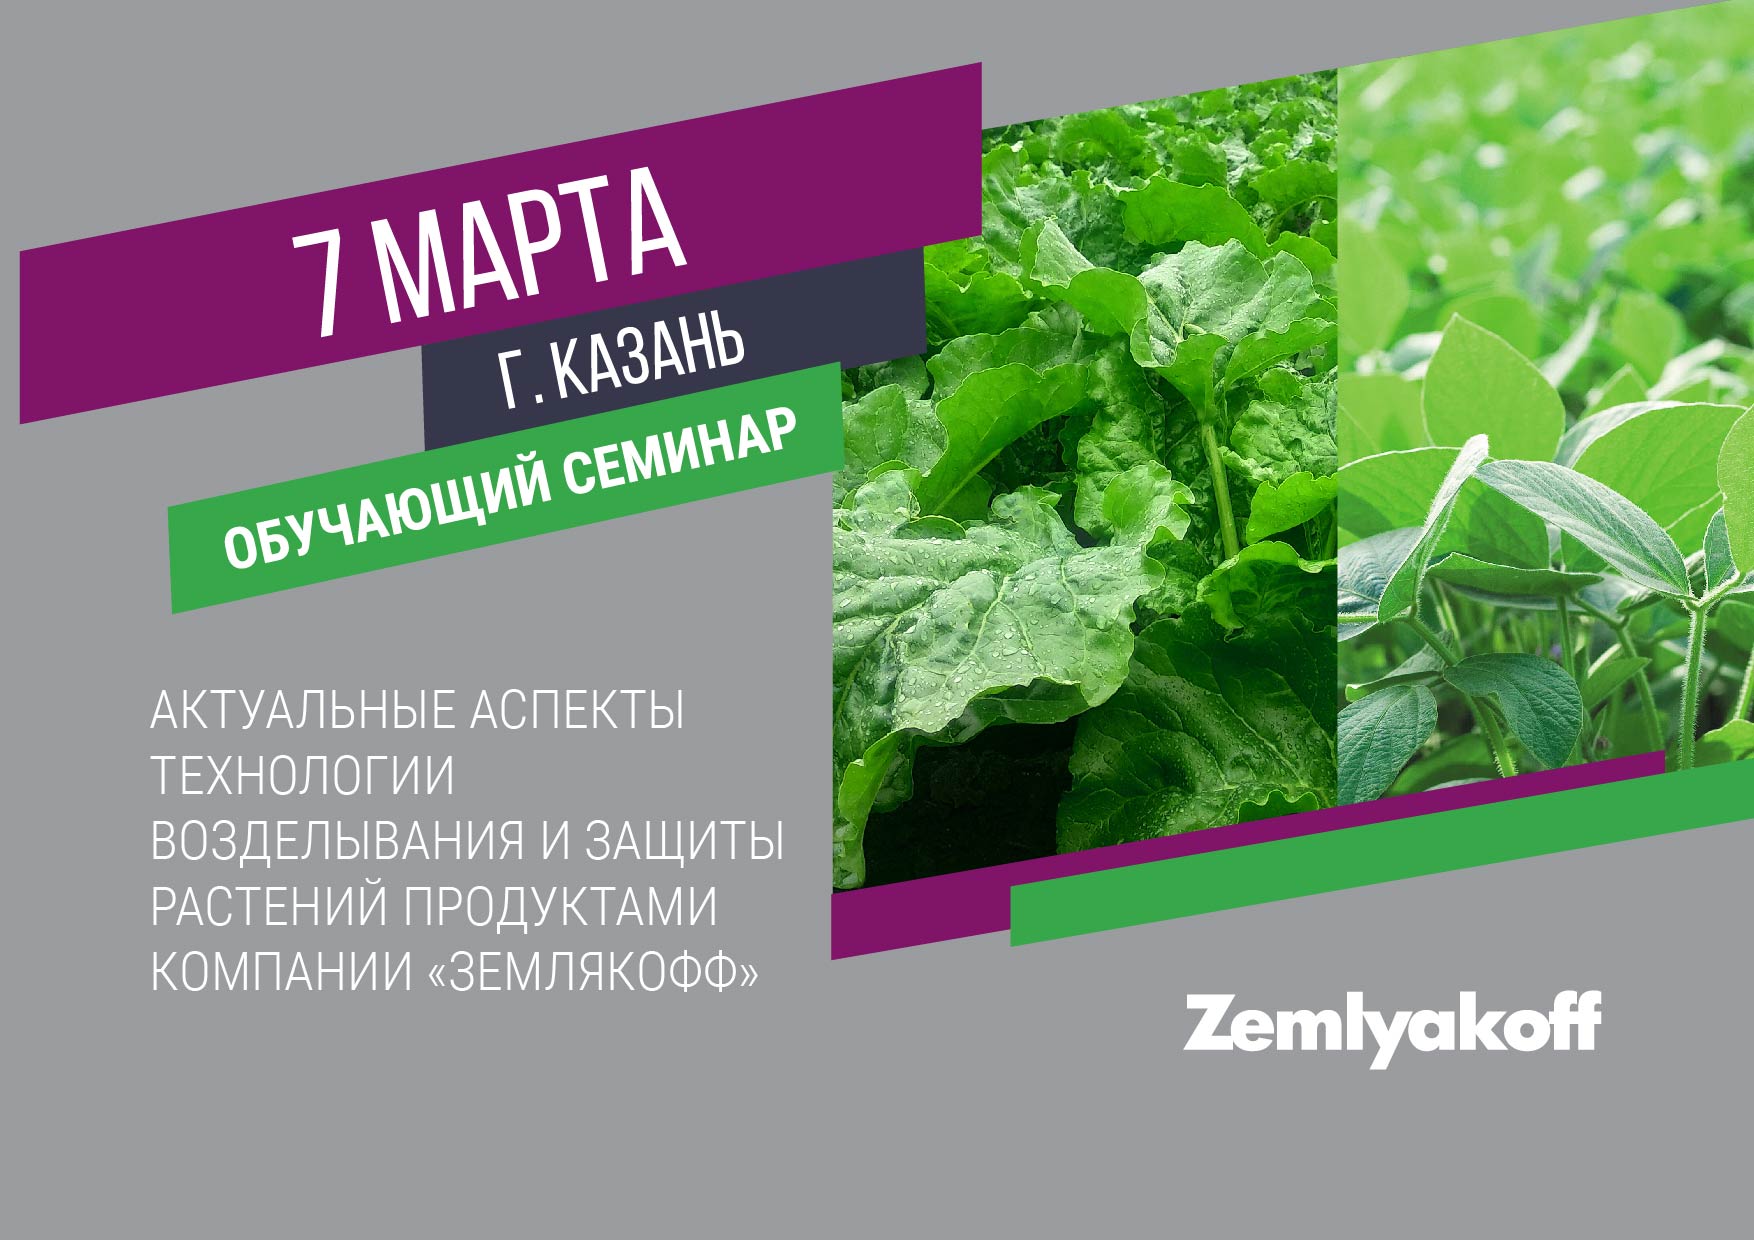 Семинар по защите растений в Республике Татарстан